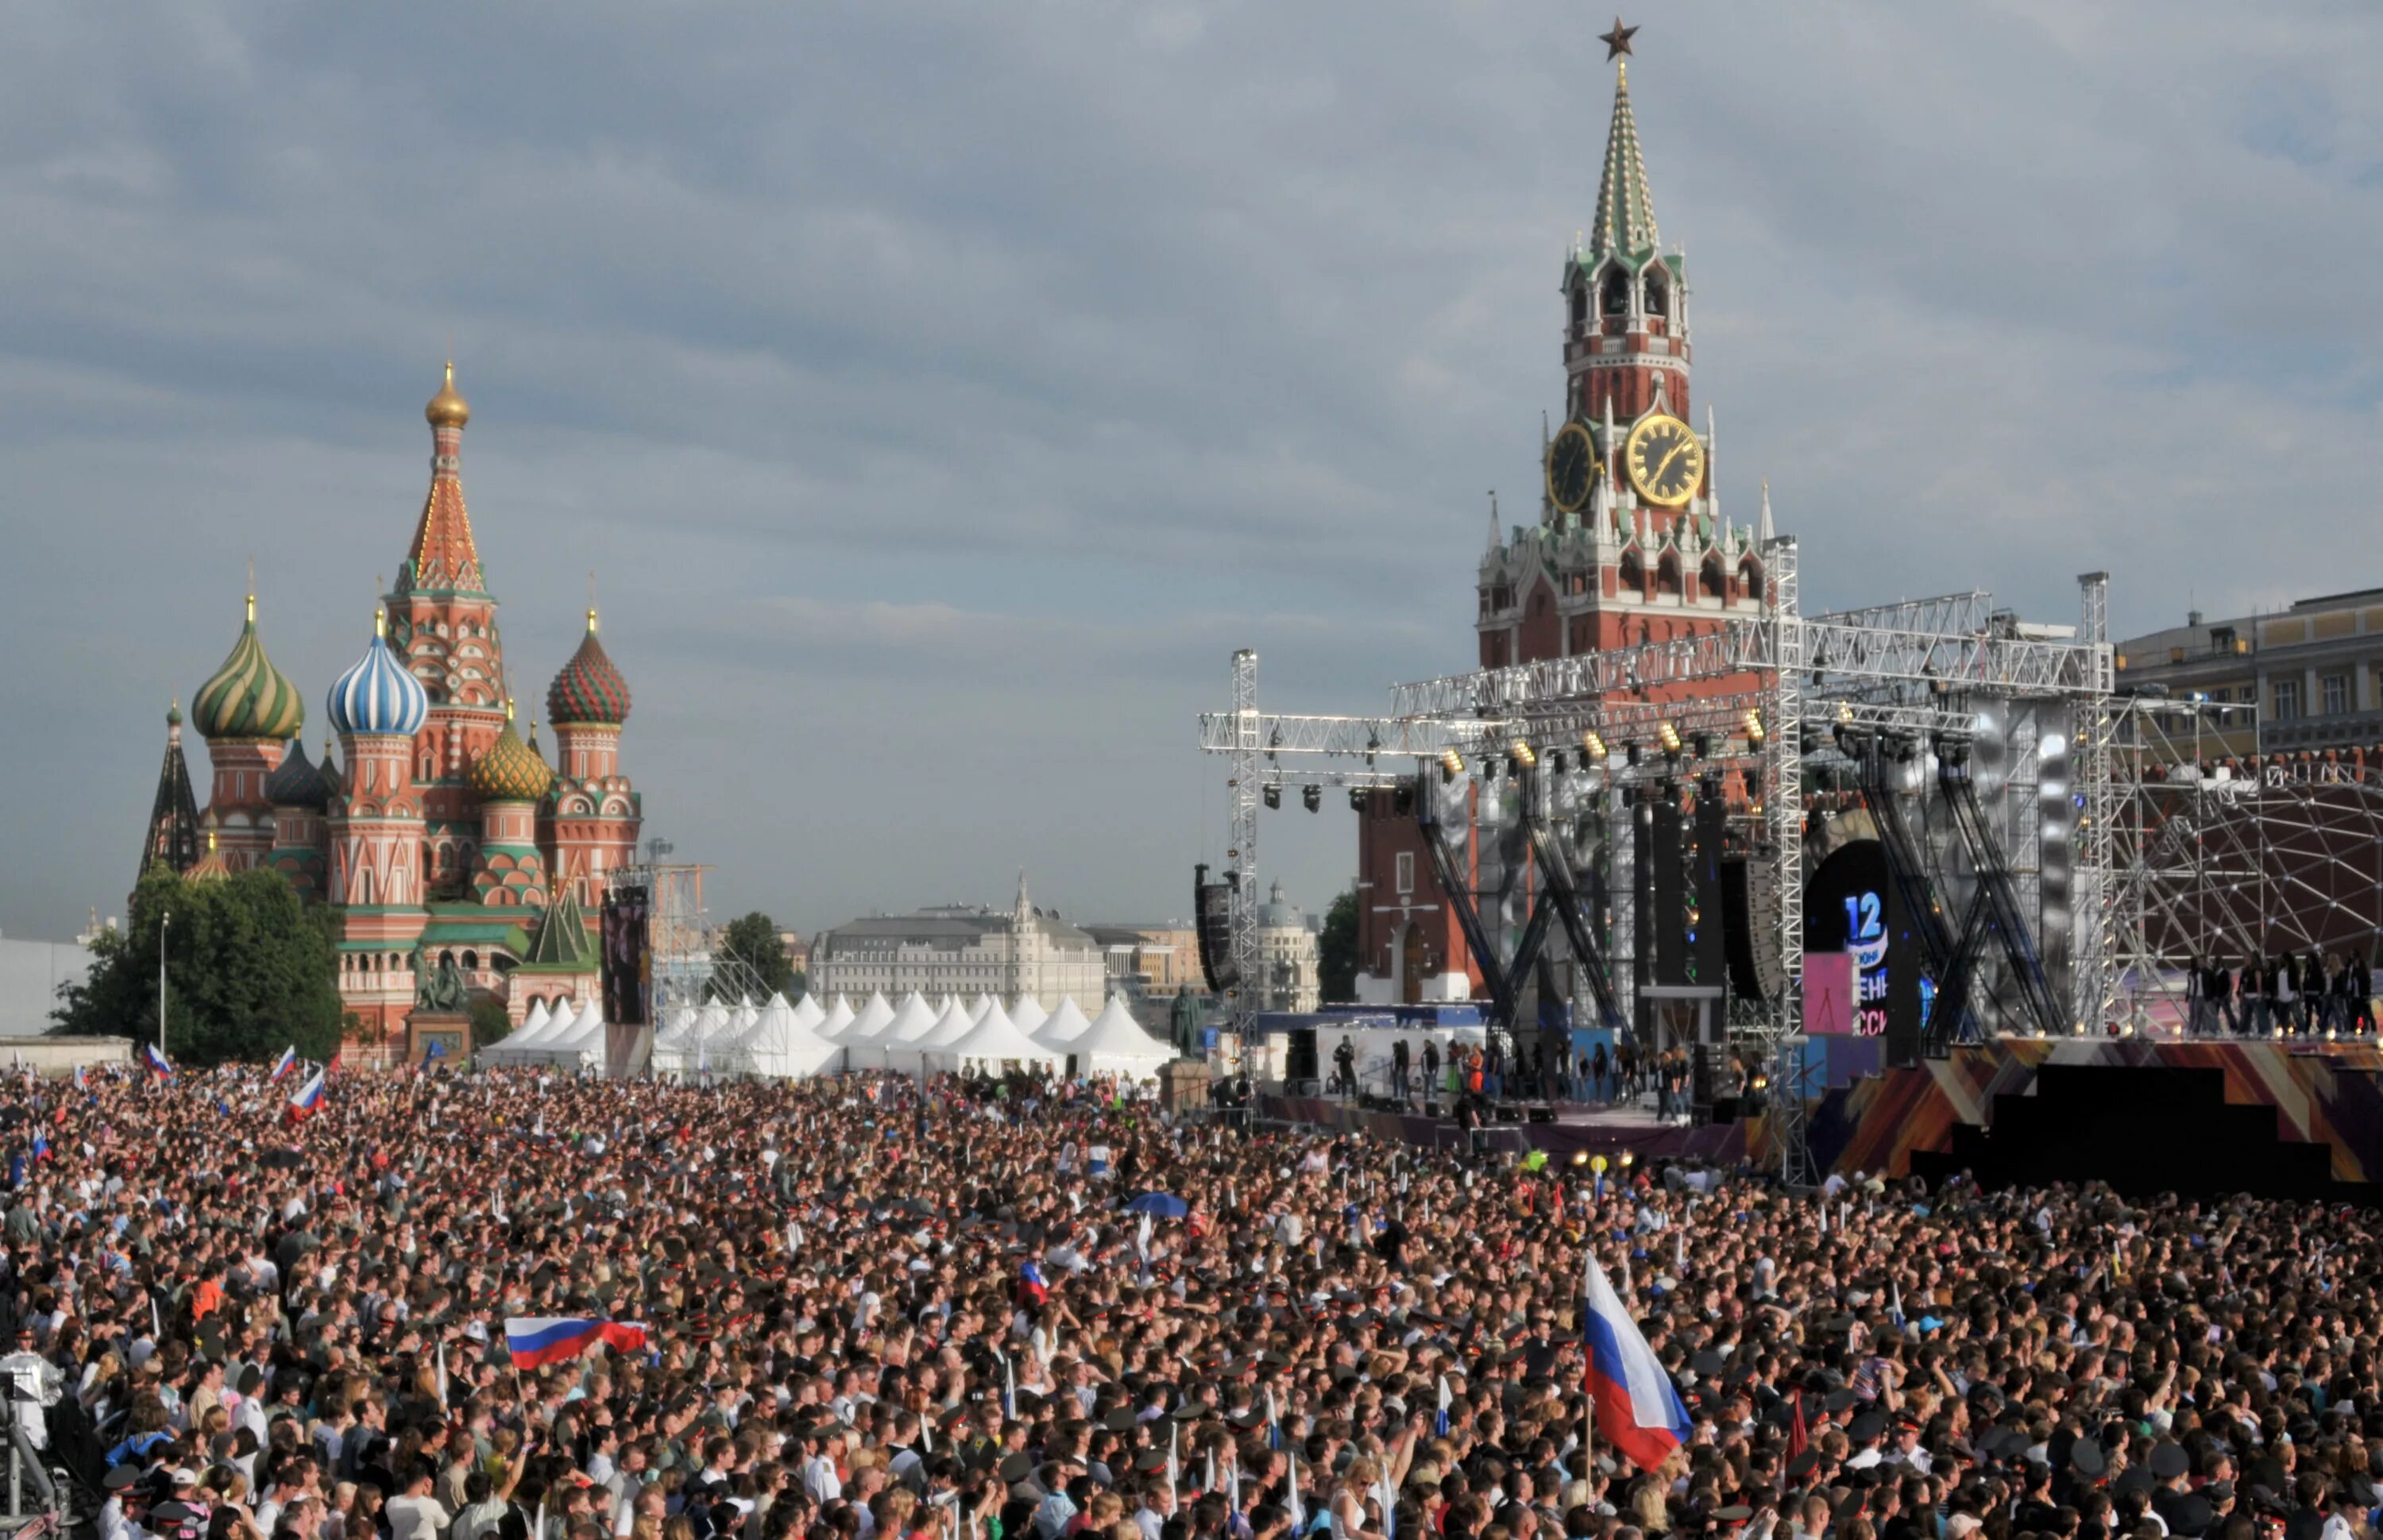 18 00 на площади. Народ на красной площади. Толпа на красной площади. Много людей на площади. Москва люди.